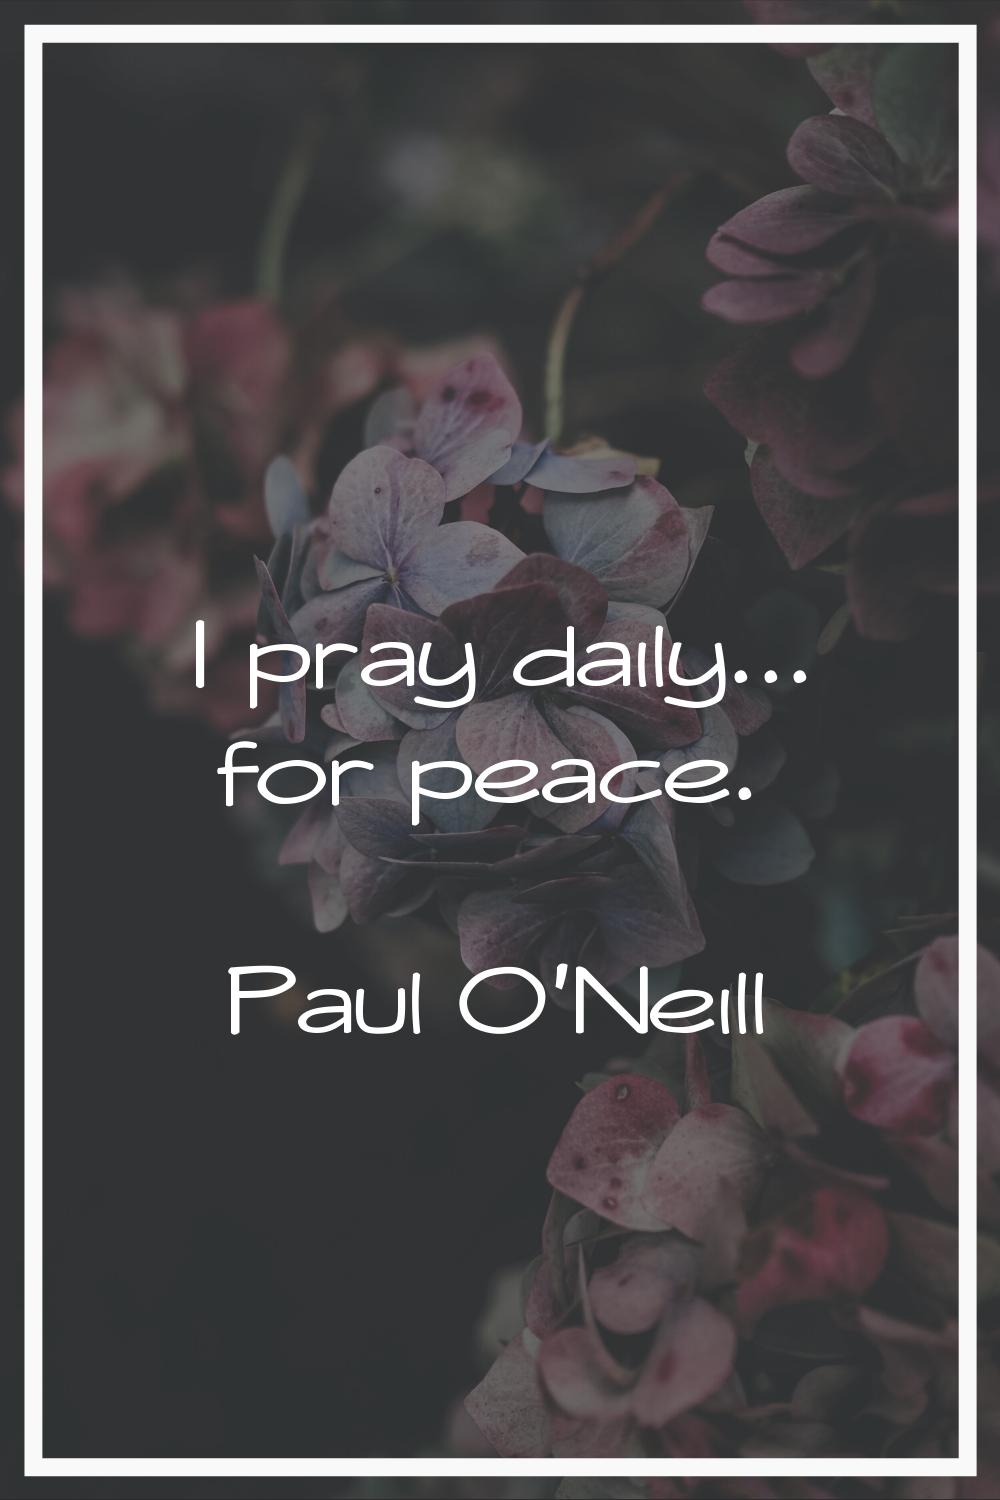 I pray daily... for peace.